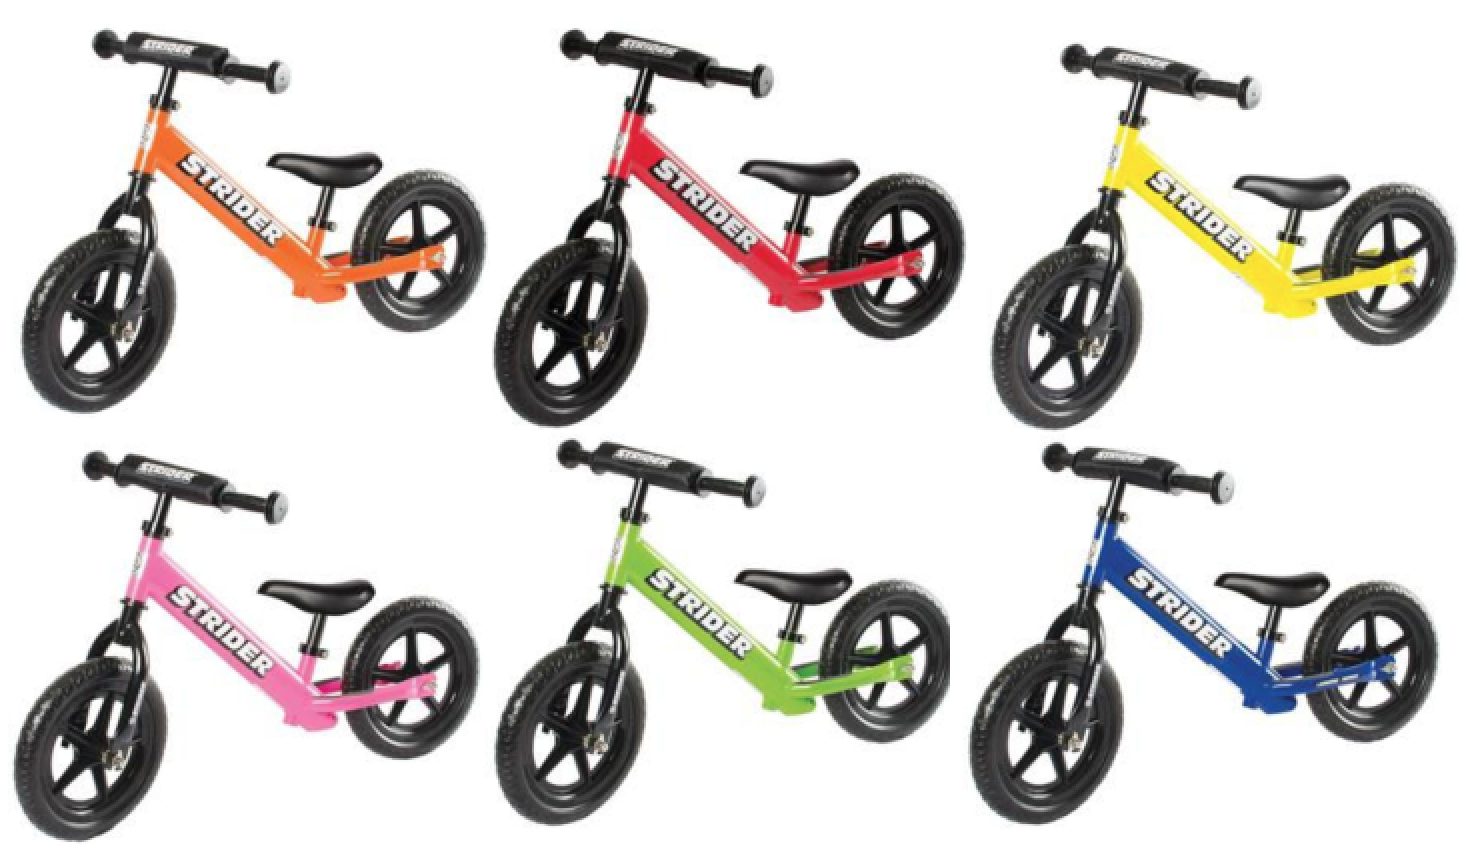 strider 12 sport balance bike pedals